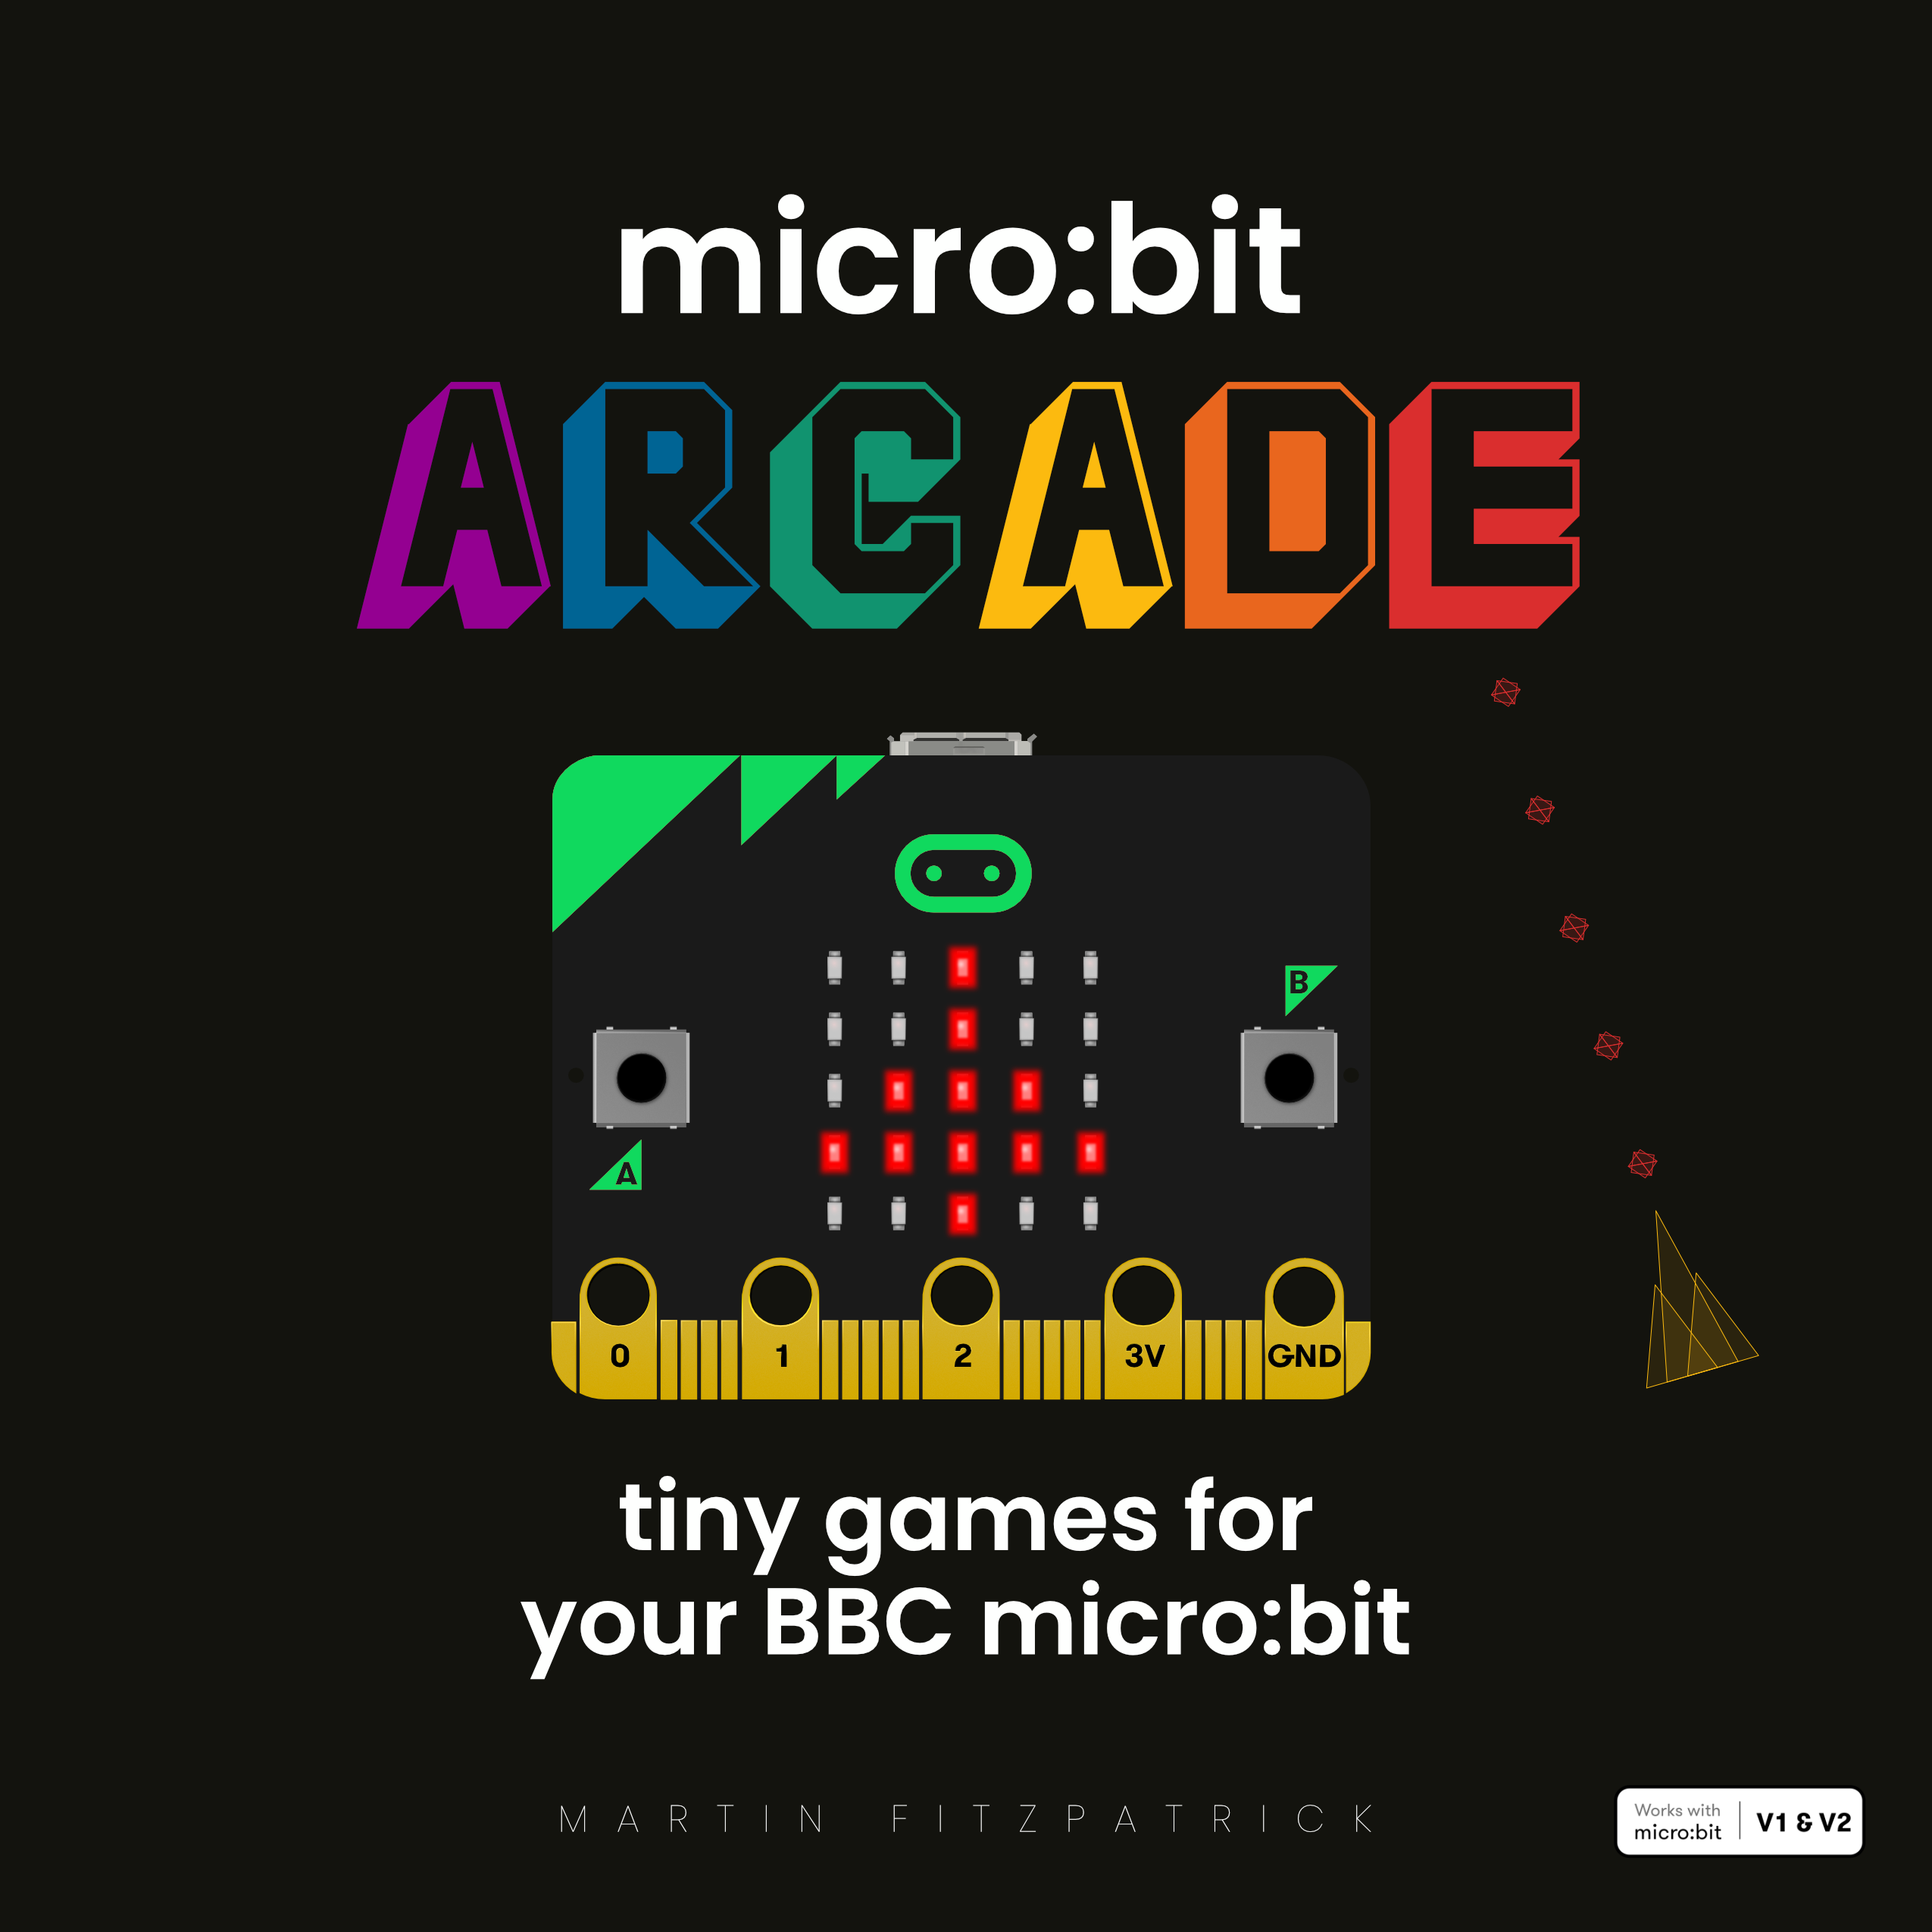 micro:bit Arcade